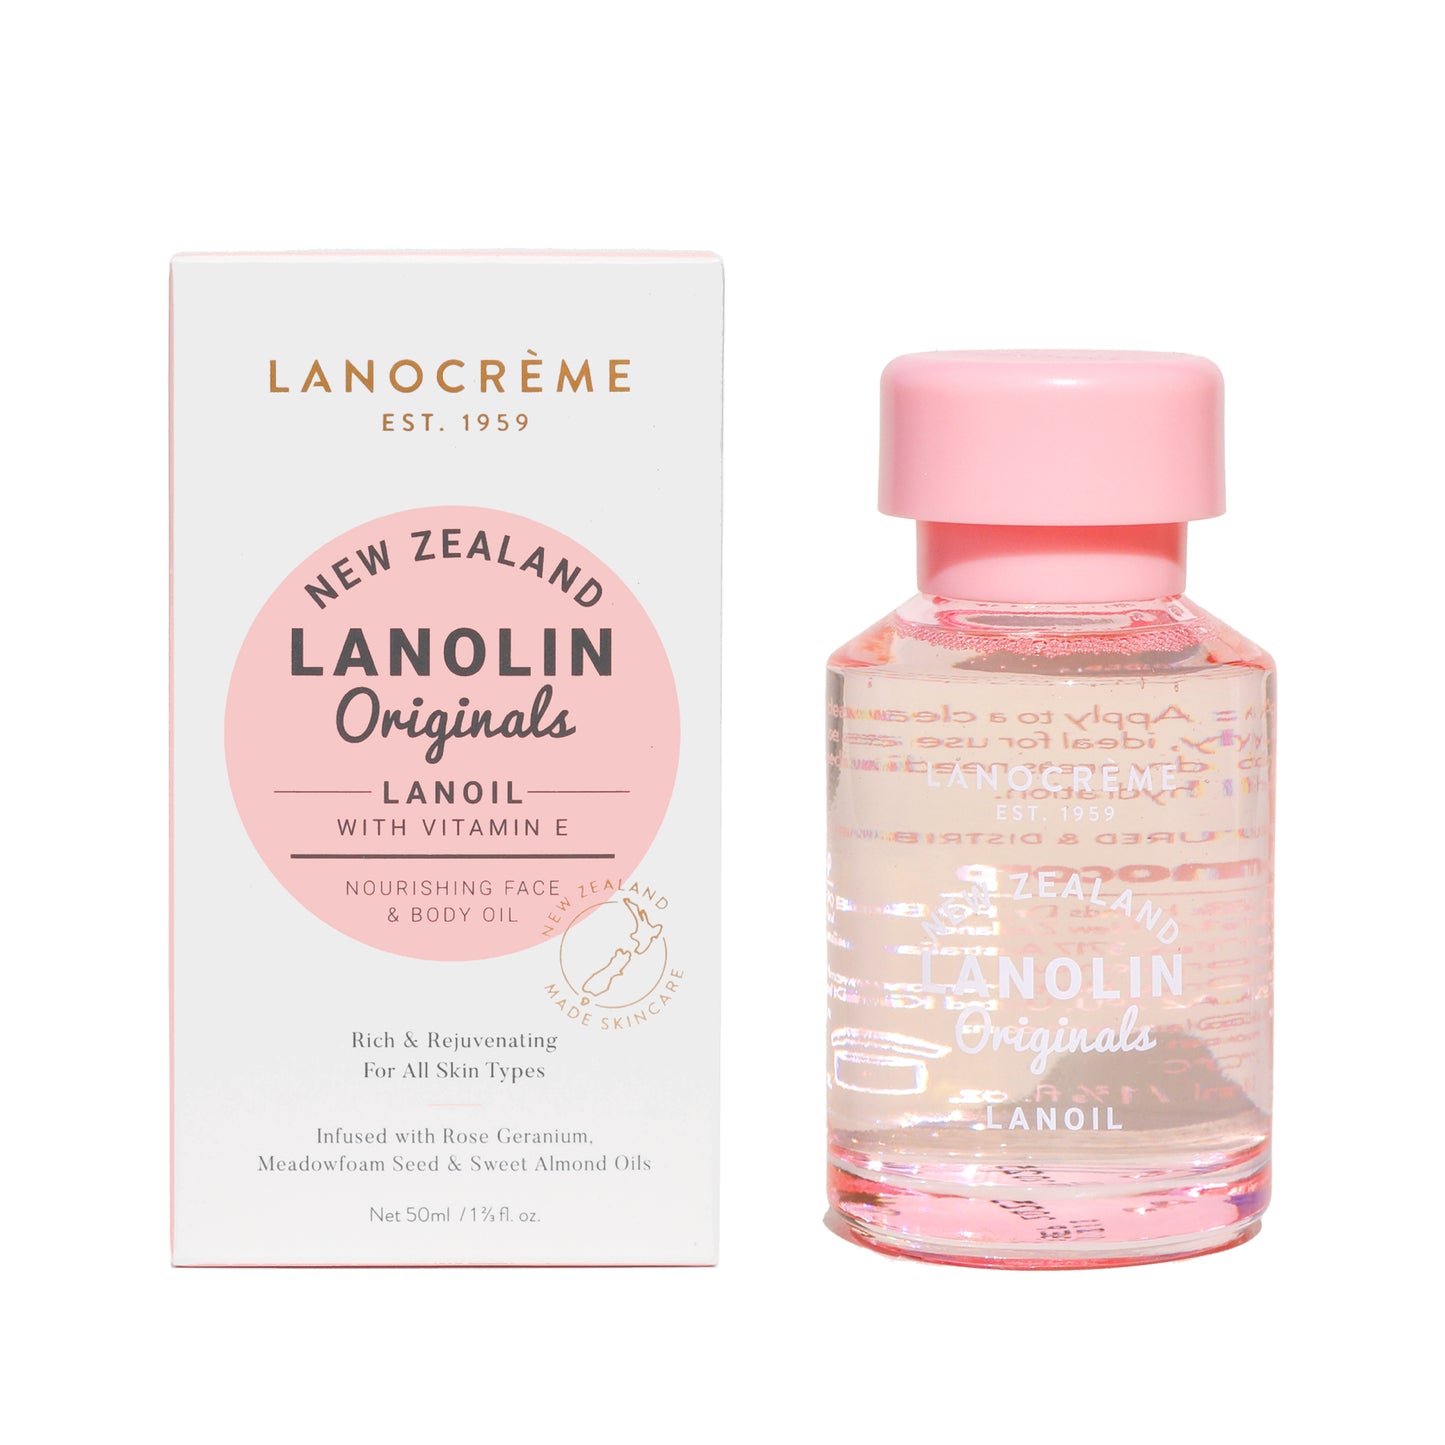 Lanolin Originals Lanoil with Vitamin E